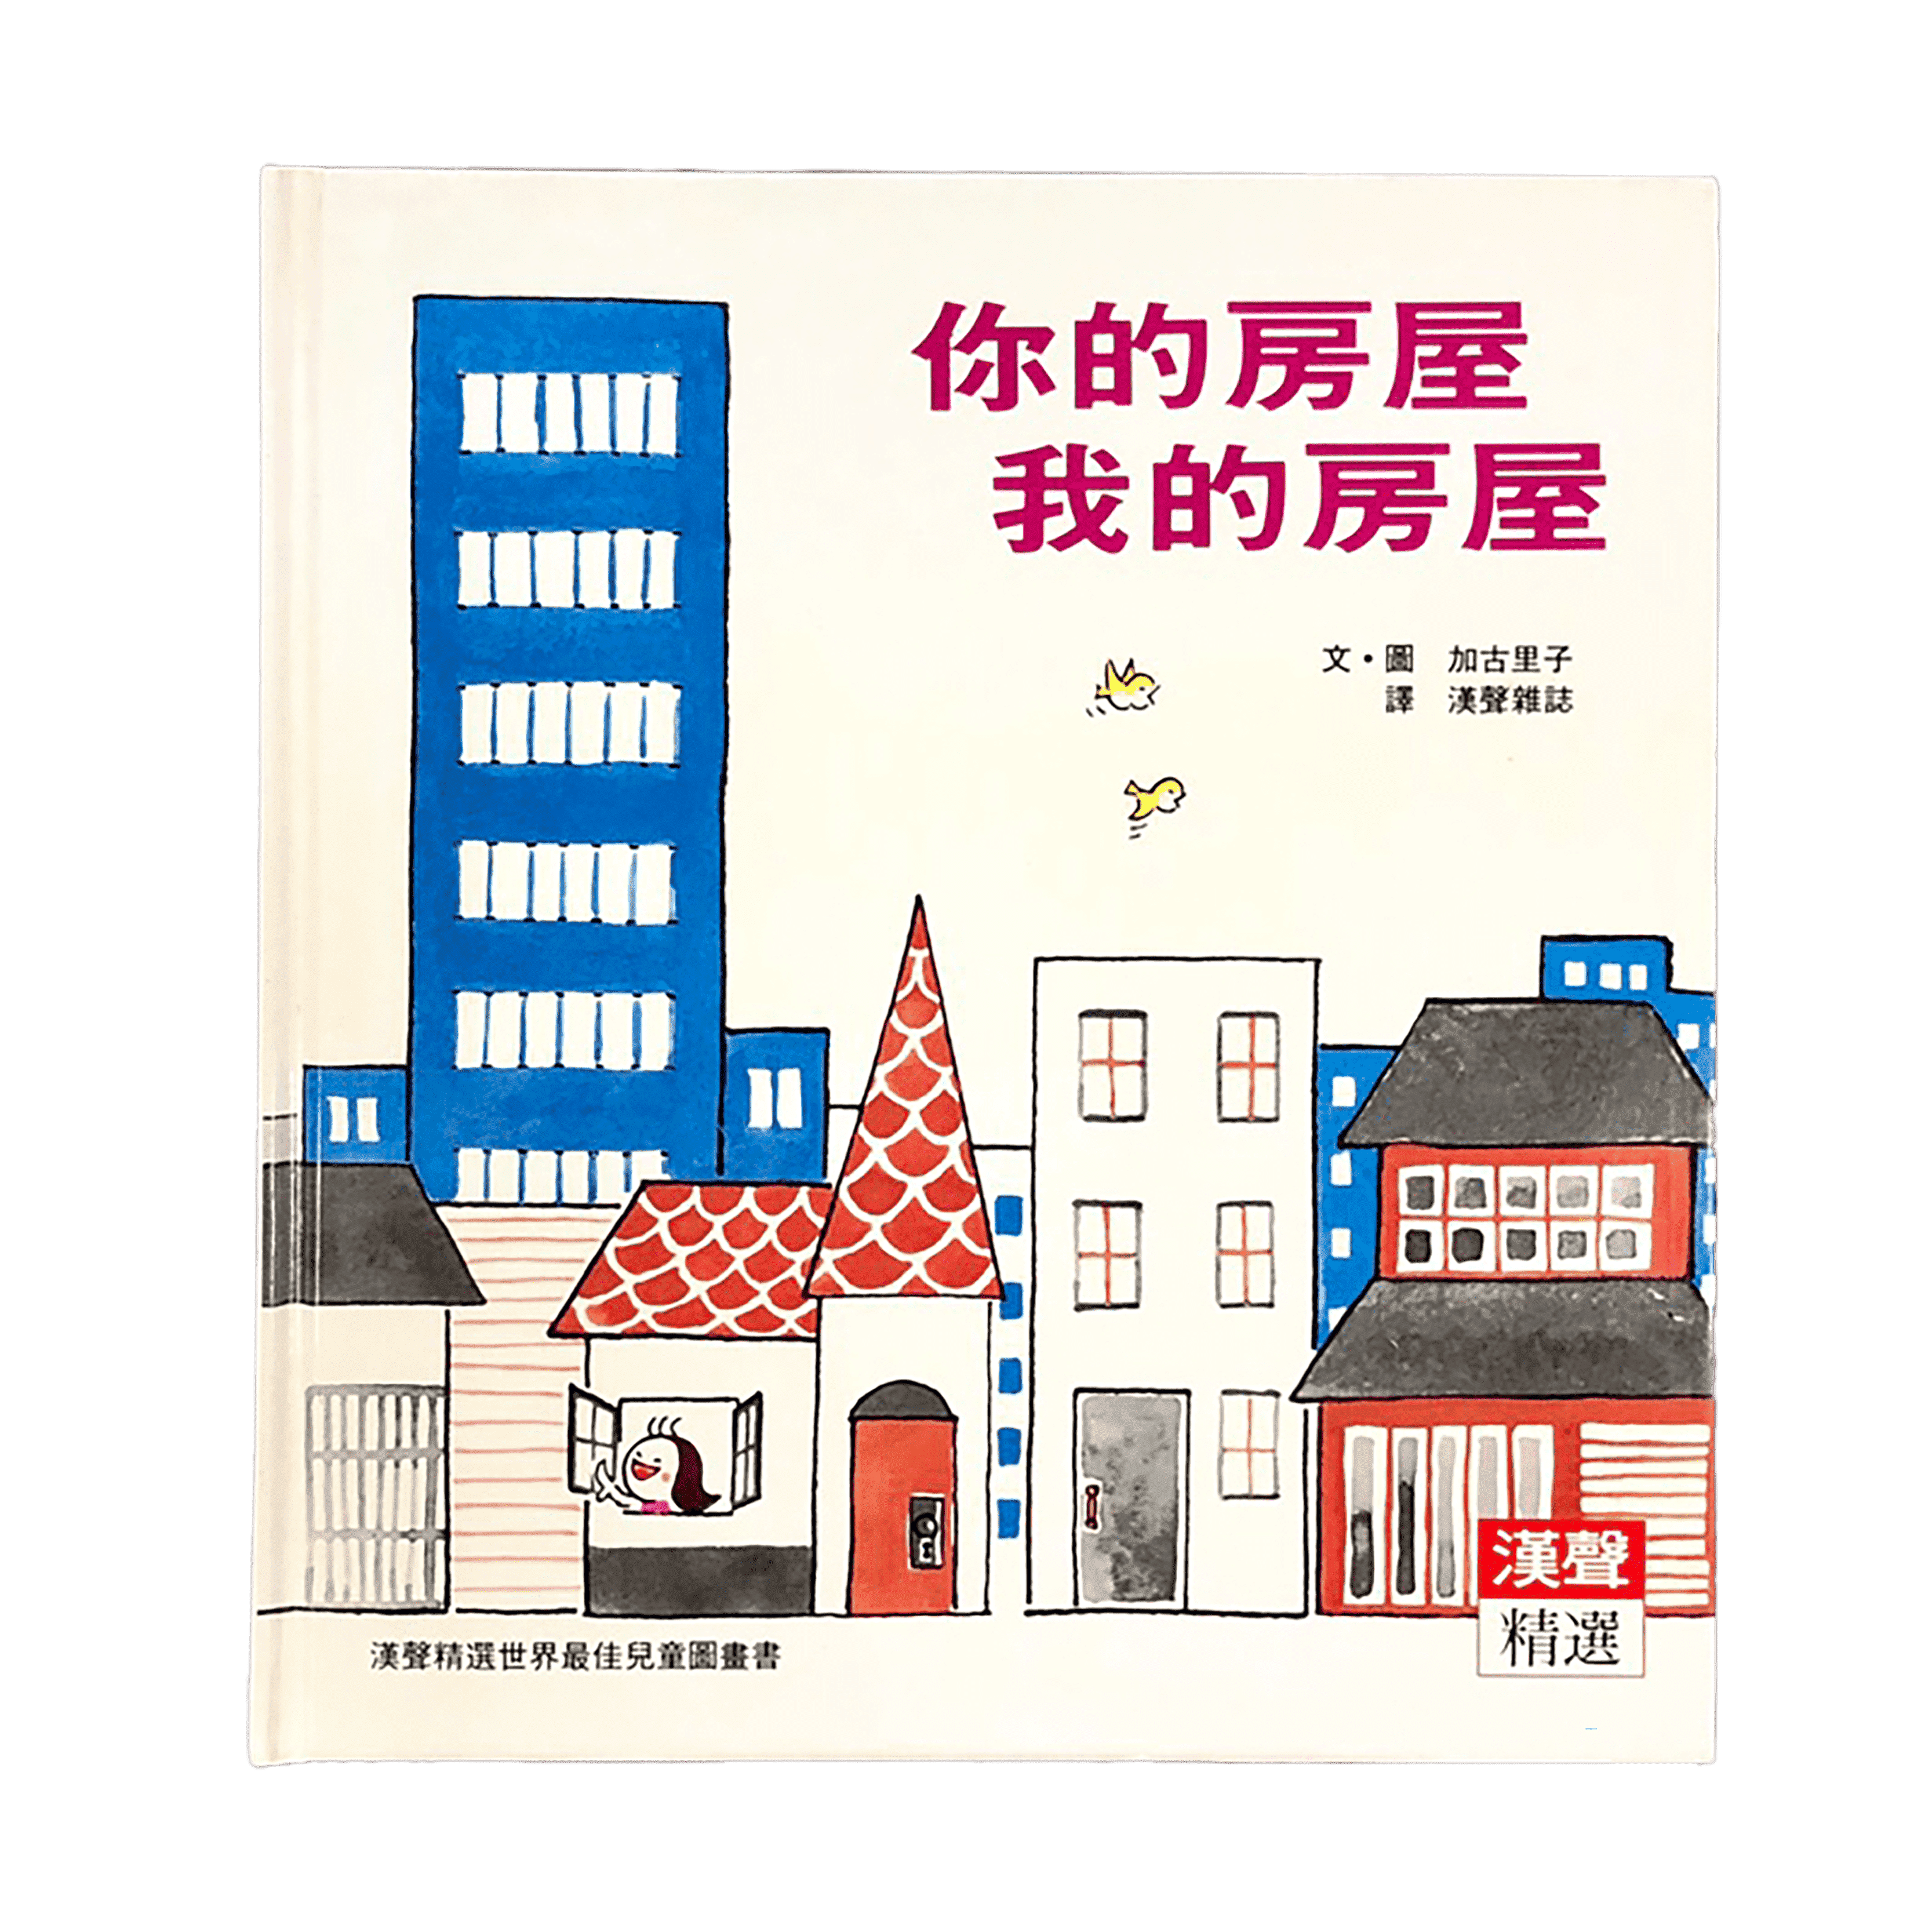 「我們的房子」主題選書6：蓋一間房子_《你的房屋我的房屋》
圖片提供／桃園市立美術館

本書在日本於1969年出版，出版初期就引起廣泛關注，如今仍被廣泛使用在教育領域，成為許多人對於房屋和生活方式的思考起點。書中以簡單的文字和明亮的插圖探討了房屋的重要性和功能，強調房屋作為人類生活的重要工具，以及隨著時代發展而增加的功能。雖然書籍輕薄簡單，但其實日本在二戰後，有許多人居住在缺乏基本設施的環境中，這樣的書籍讓孩子們有機會明白，即使是最基本的房屋也是一種值得珍惜的居所。